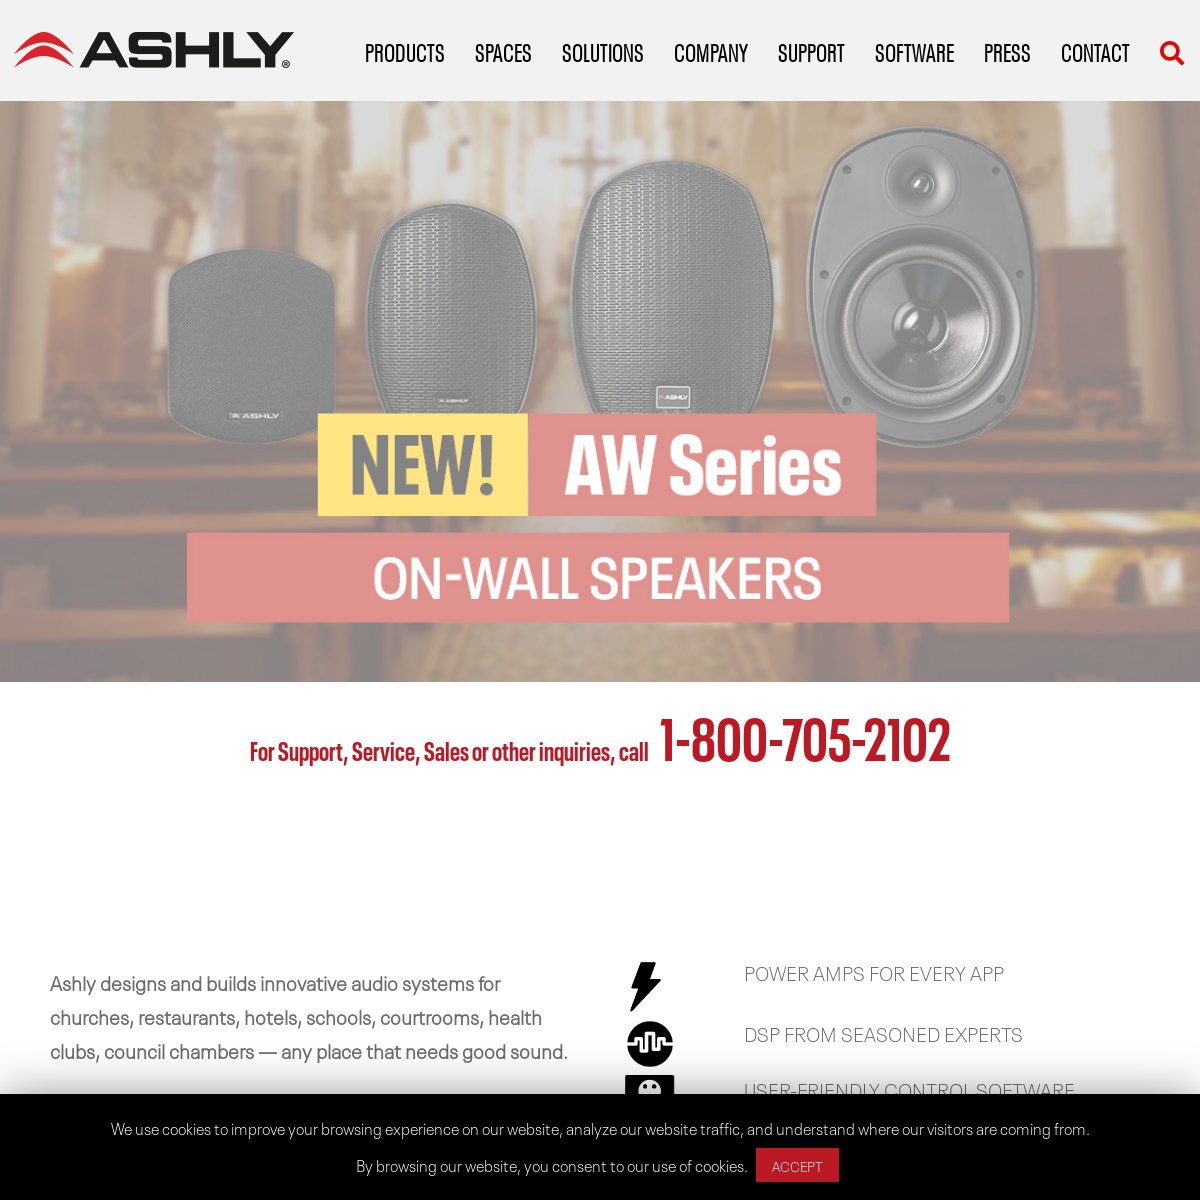 A complete backup of ashly.com